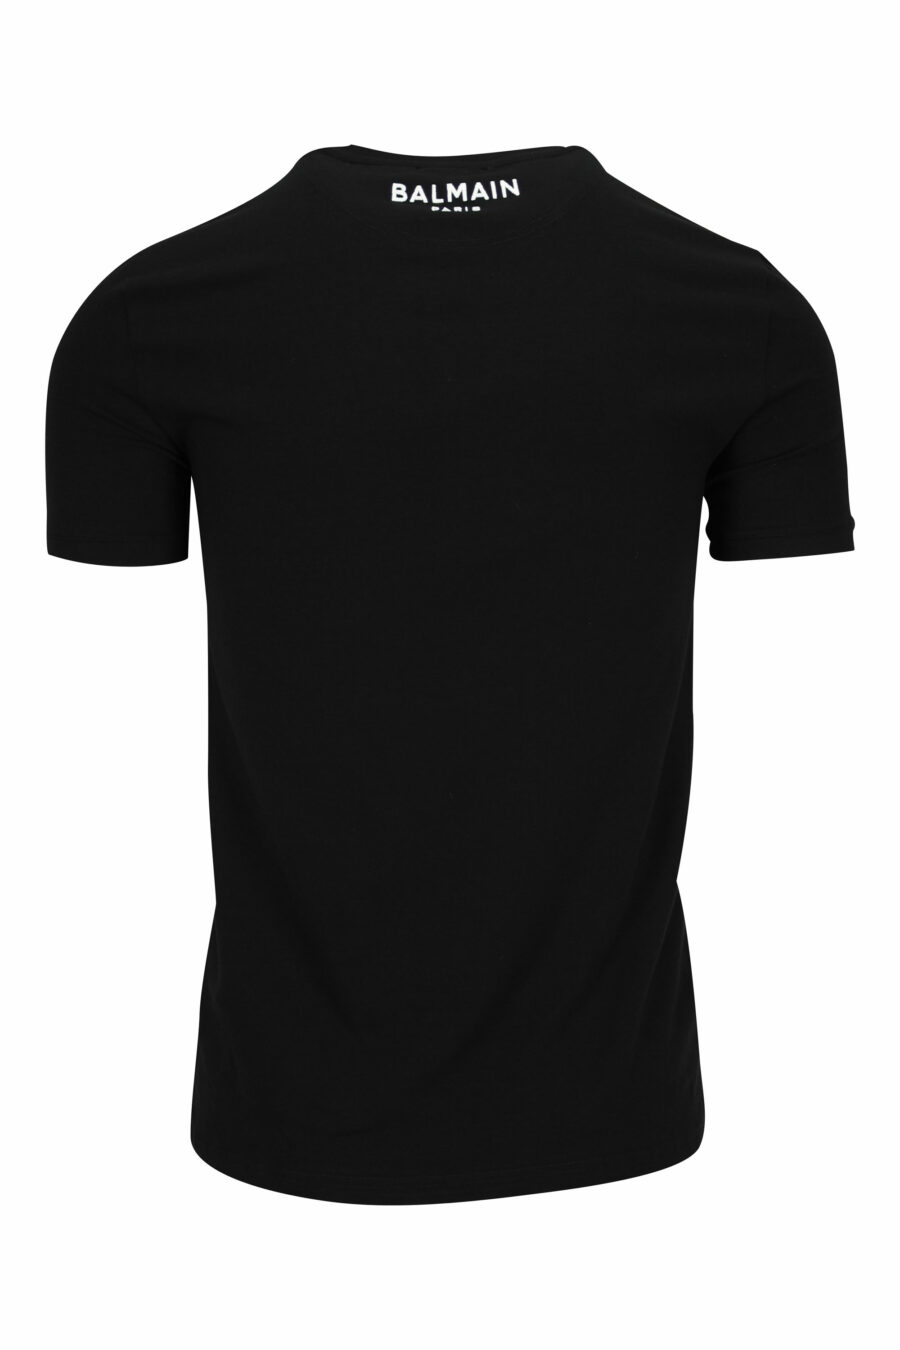 T-shirt noir avec mini-logo sur le col - 8032674524621 1